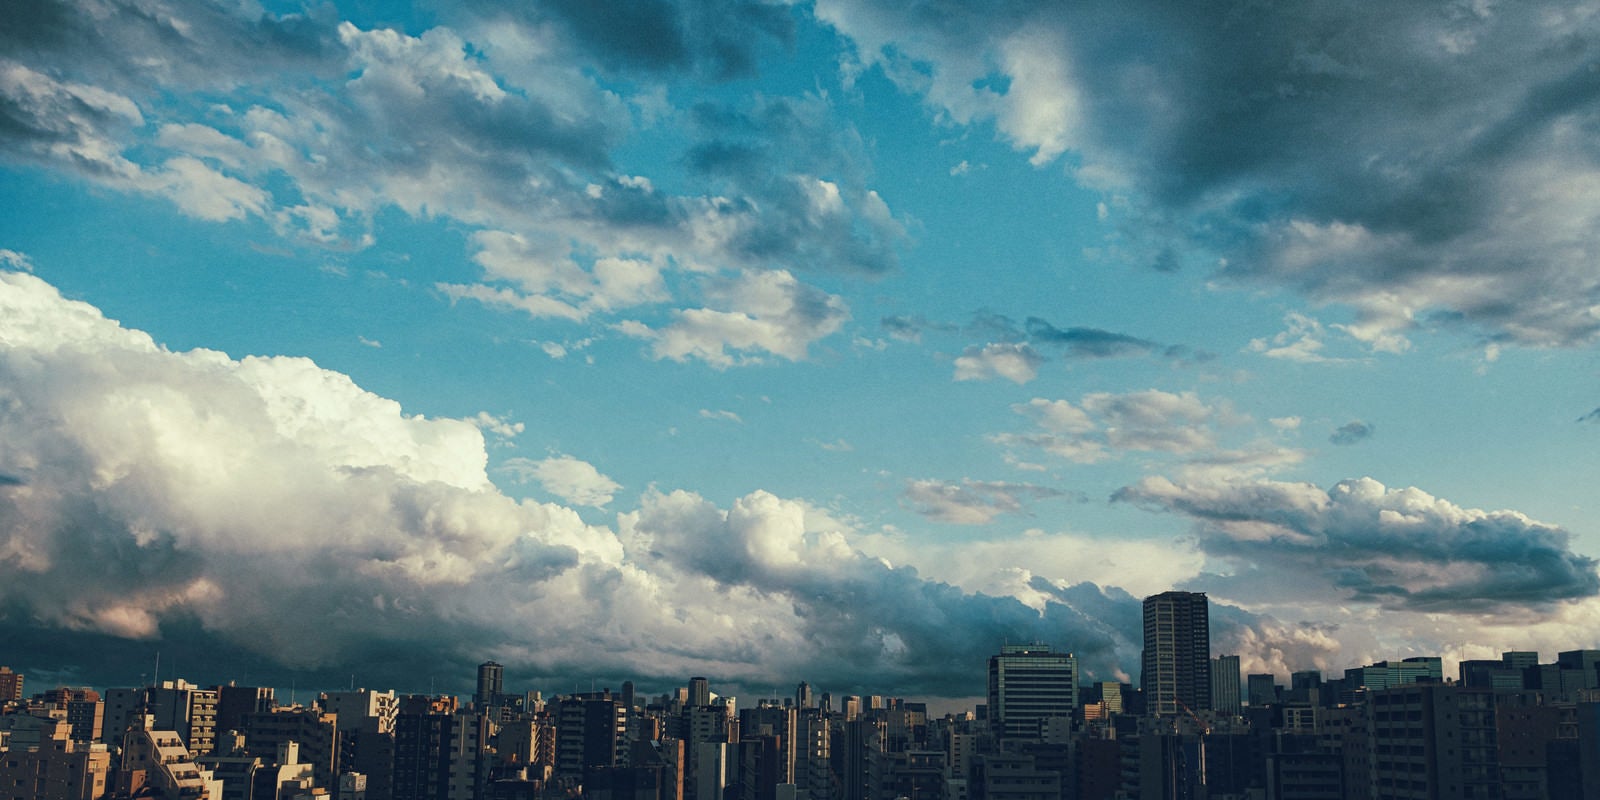 「上空に晴れ間と雨雲の街並み」の写真